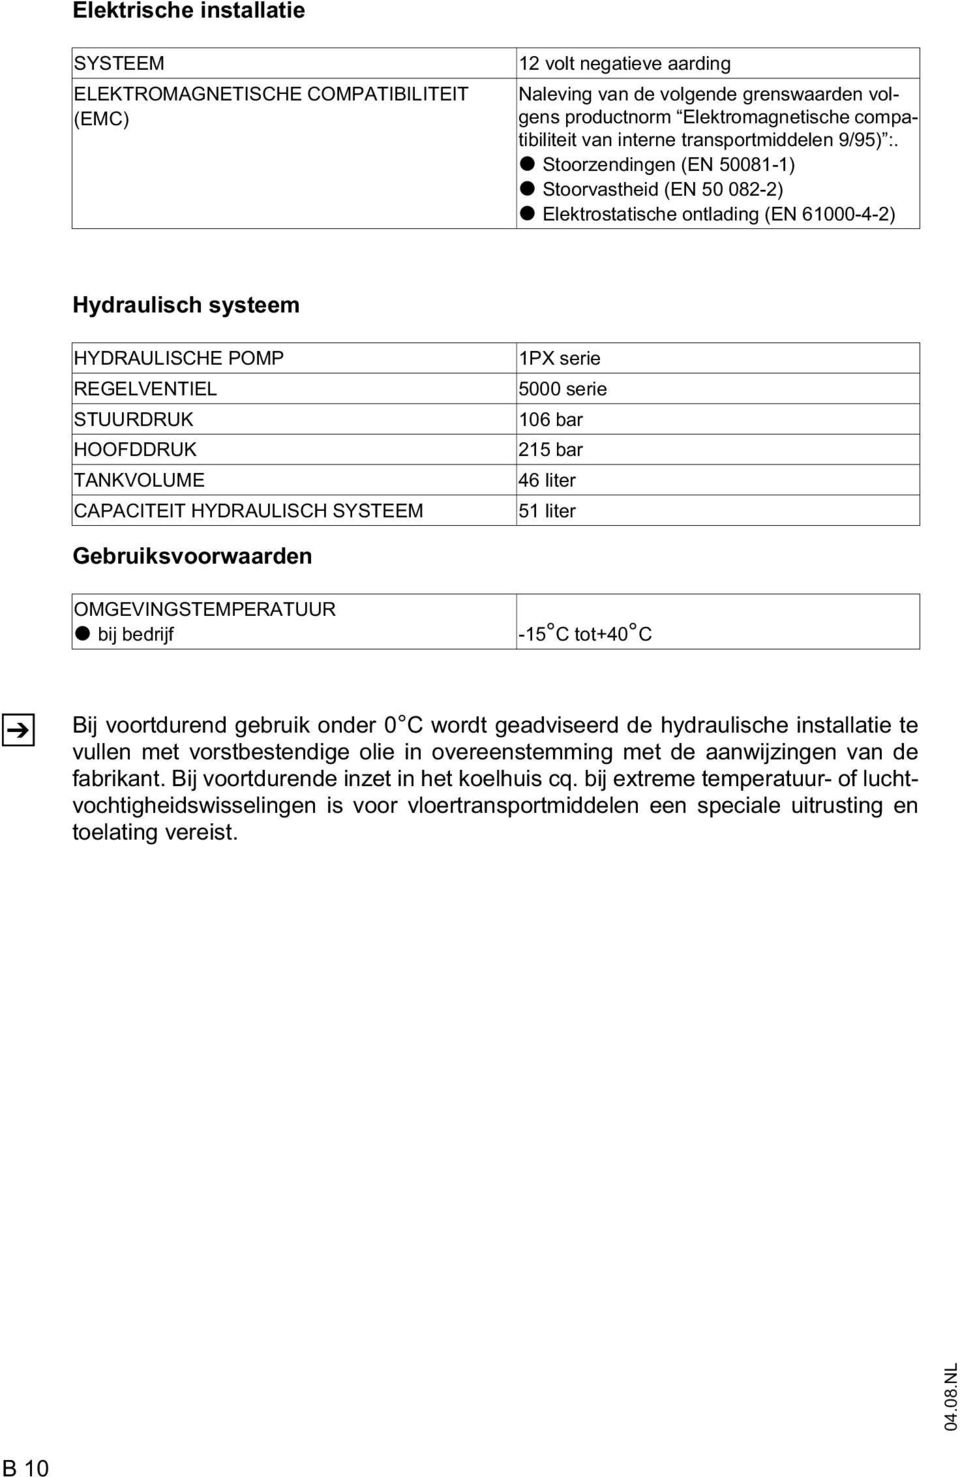 t Stoorzendingen (EN 50081-1) t Stoorvastheid (EN 50 082-2) t Elektrostatische ontlading (EN 61000-4-2) Hydraulisch systeem HYDRAULISCHE POMP REGELVENTIEL STUURDRUK HOODDRUK TANKVOLUME CAPACITEIT